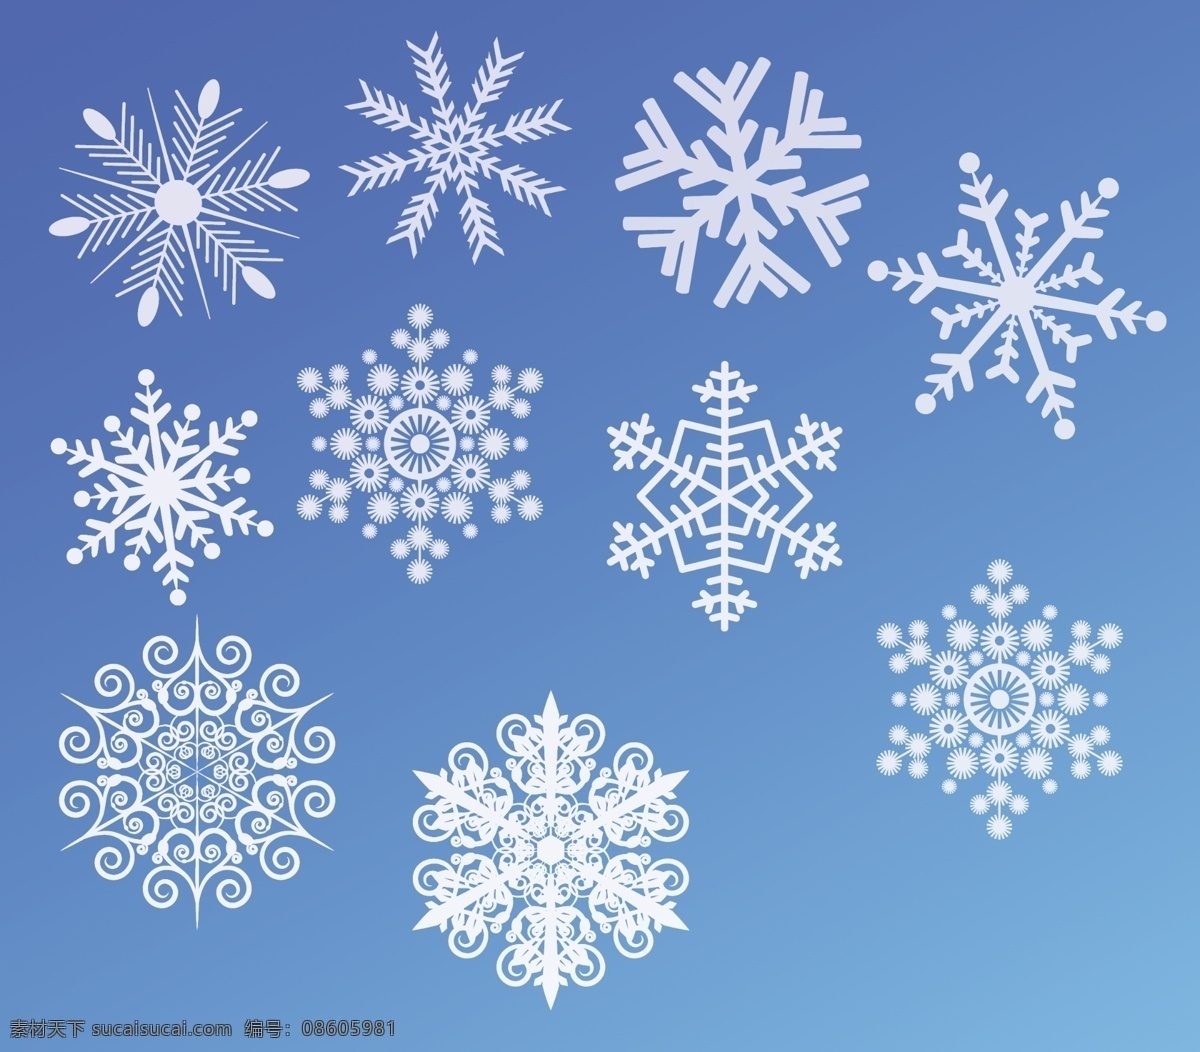 各种雪花 雪花 圣诞雪花 冬天雪花 雪花冰 下雪雪花 圣诞 雪花形状 雪花型状 雪花素材 分层 源文件